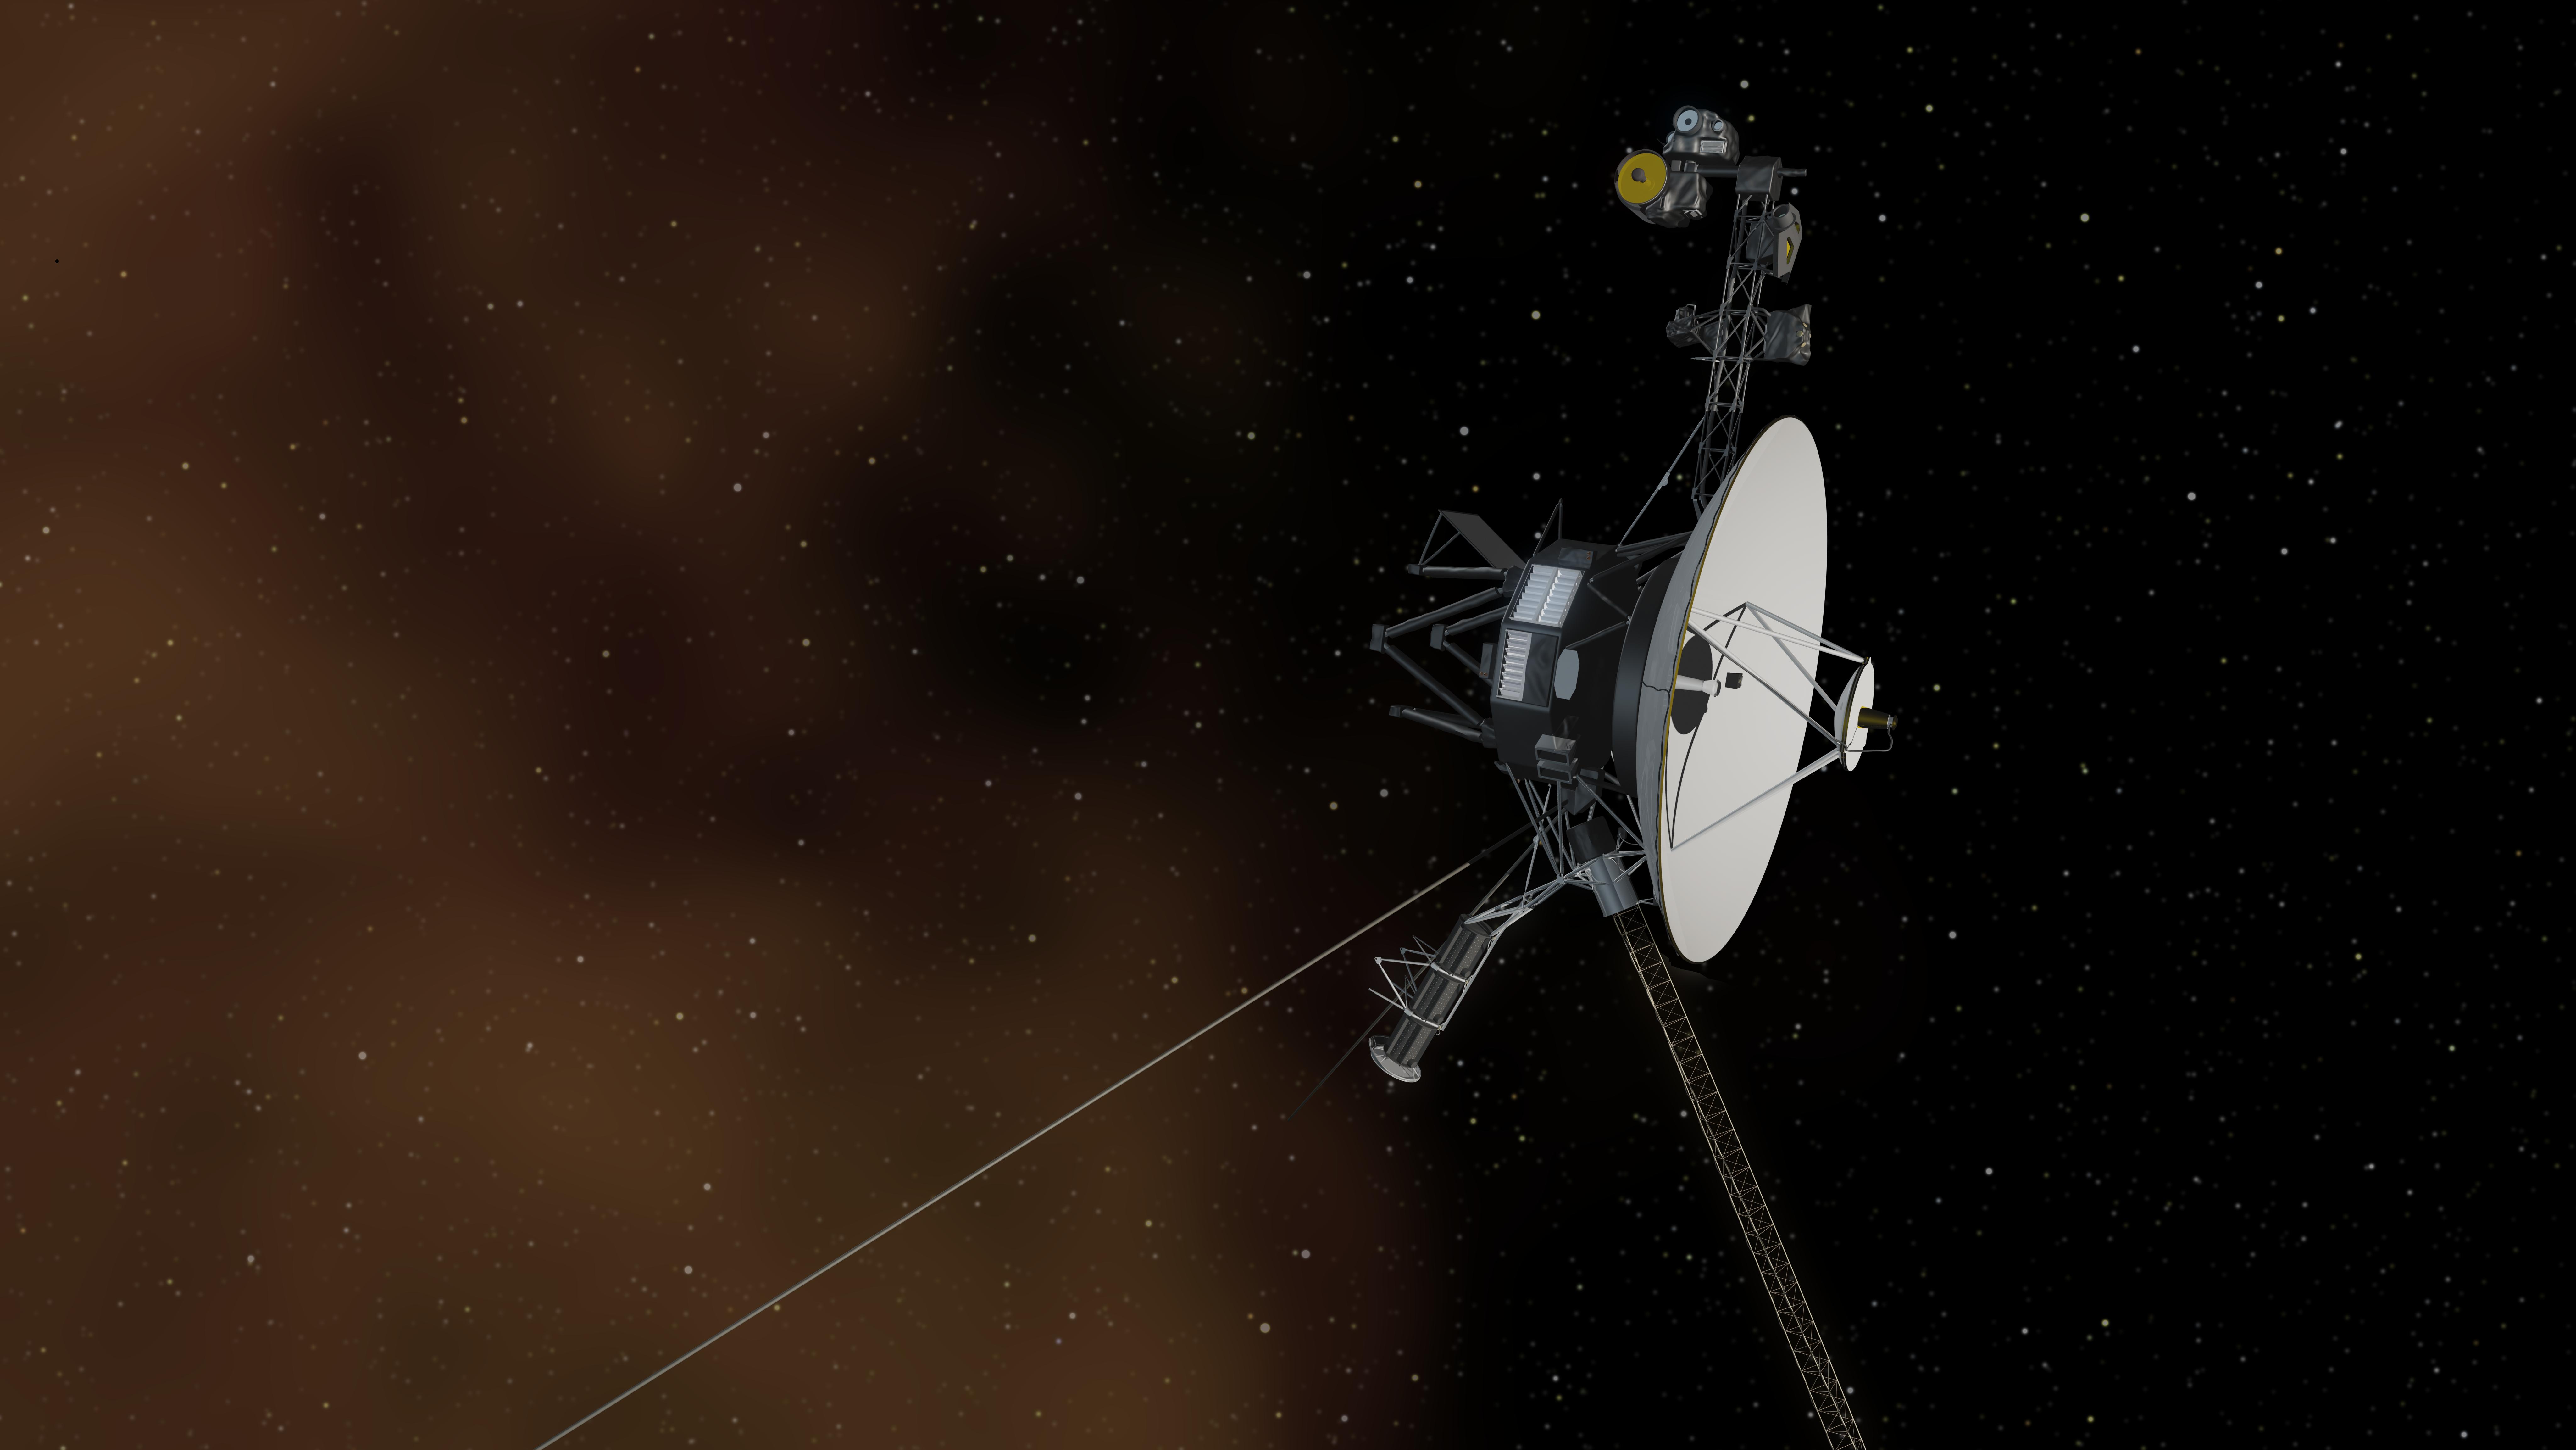 Voyager Spacecraft Wallpaper